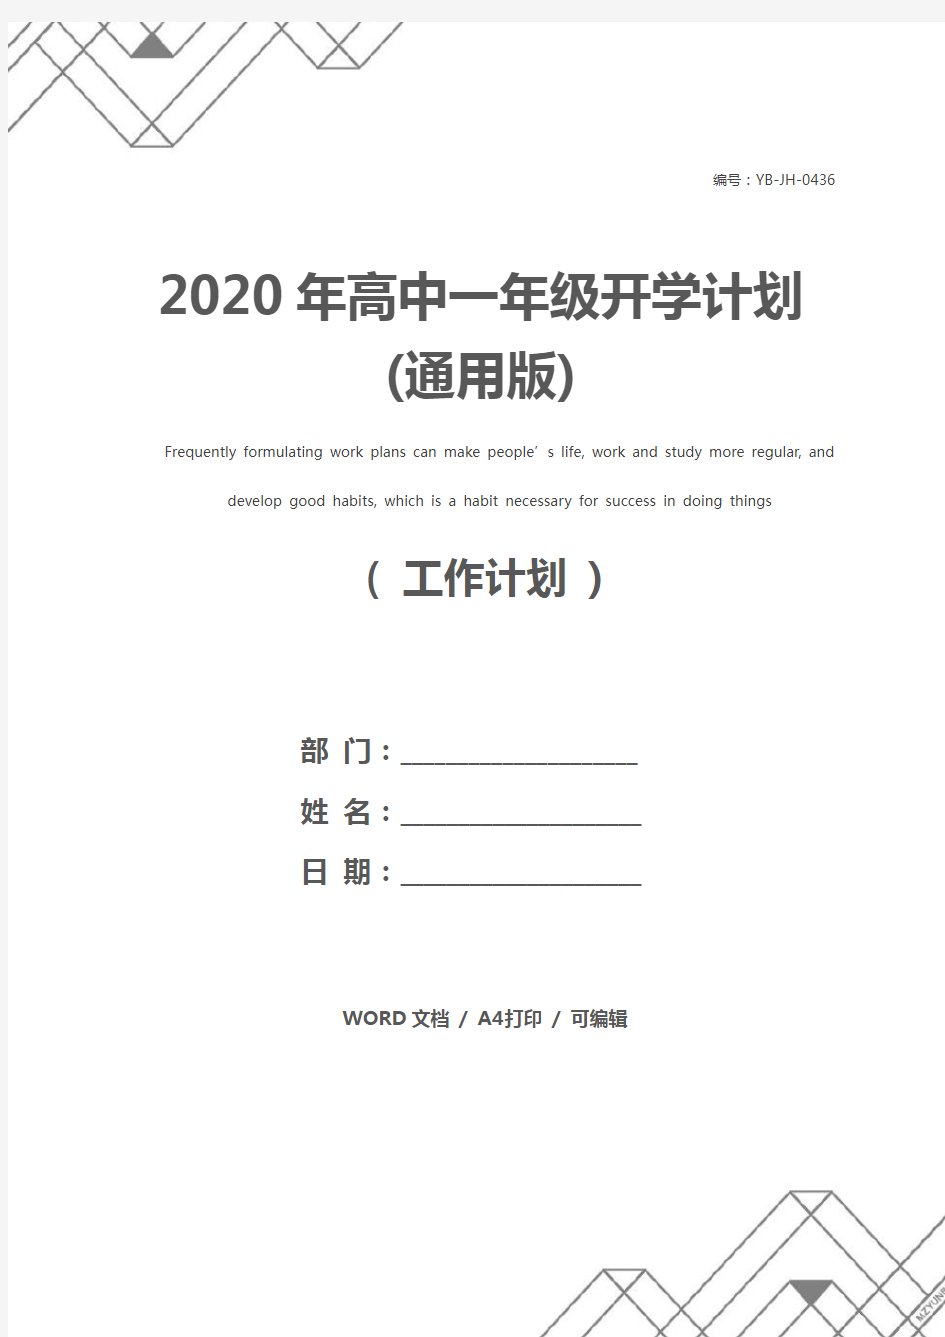 2020年高中一年级开学计划(通用版)